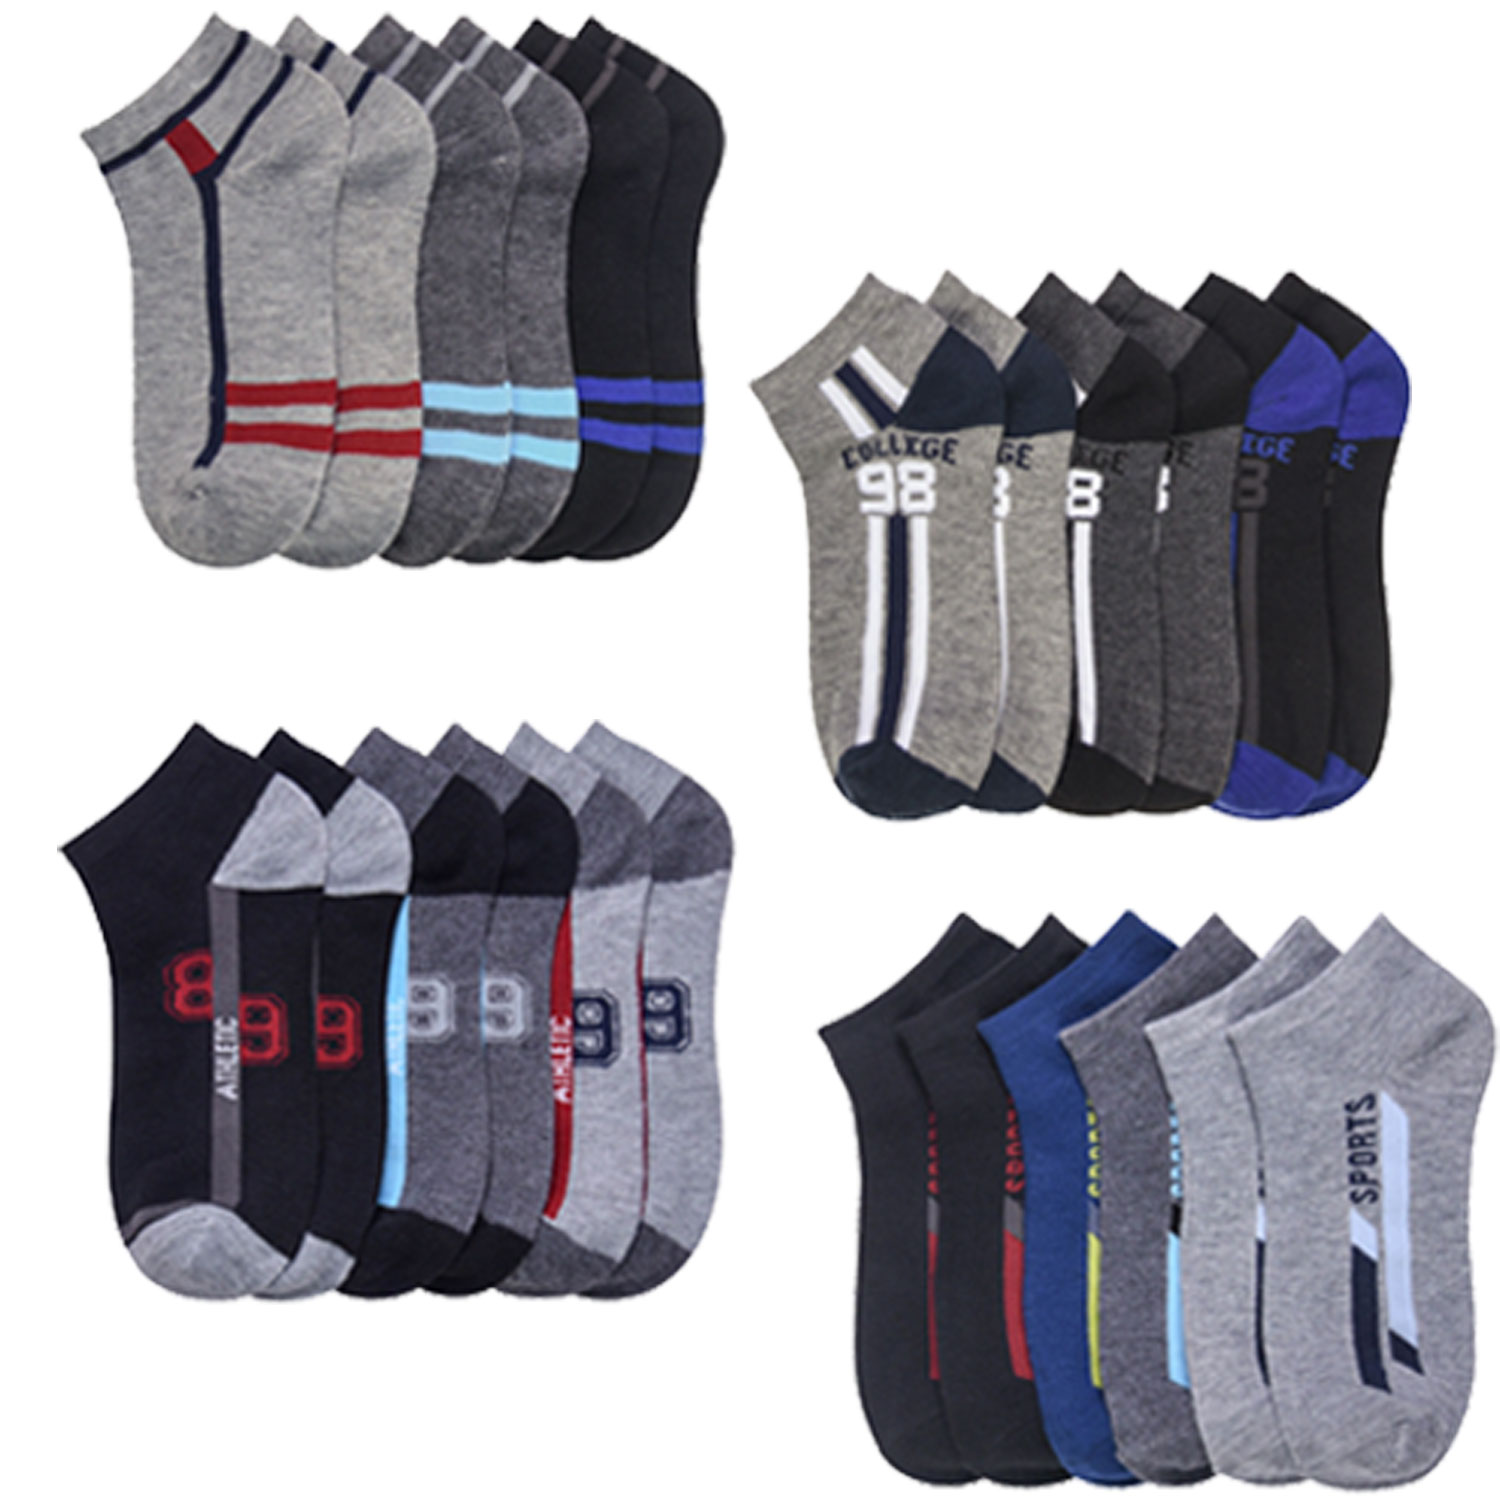 12 Pair Spandex Socks